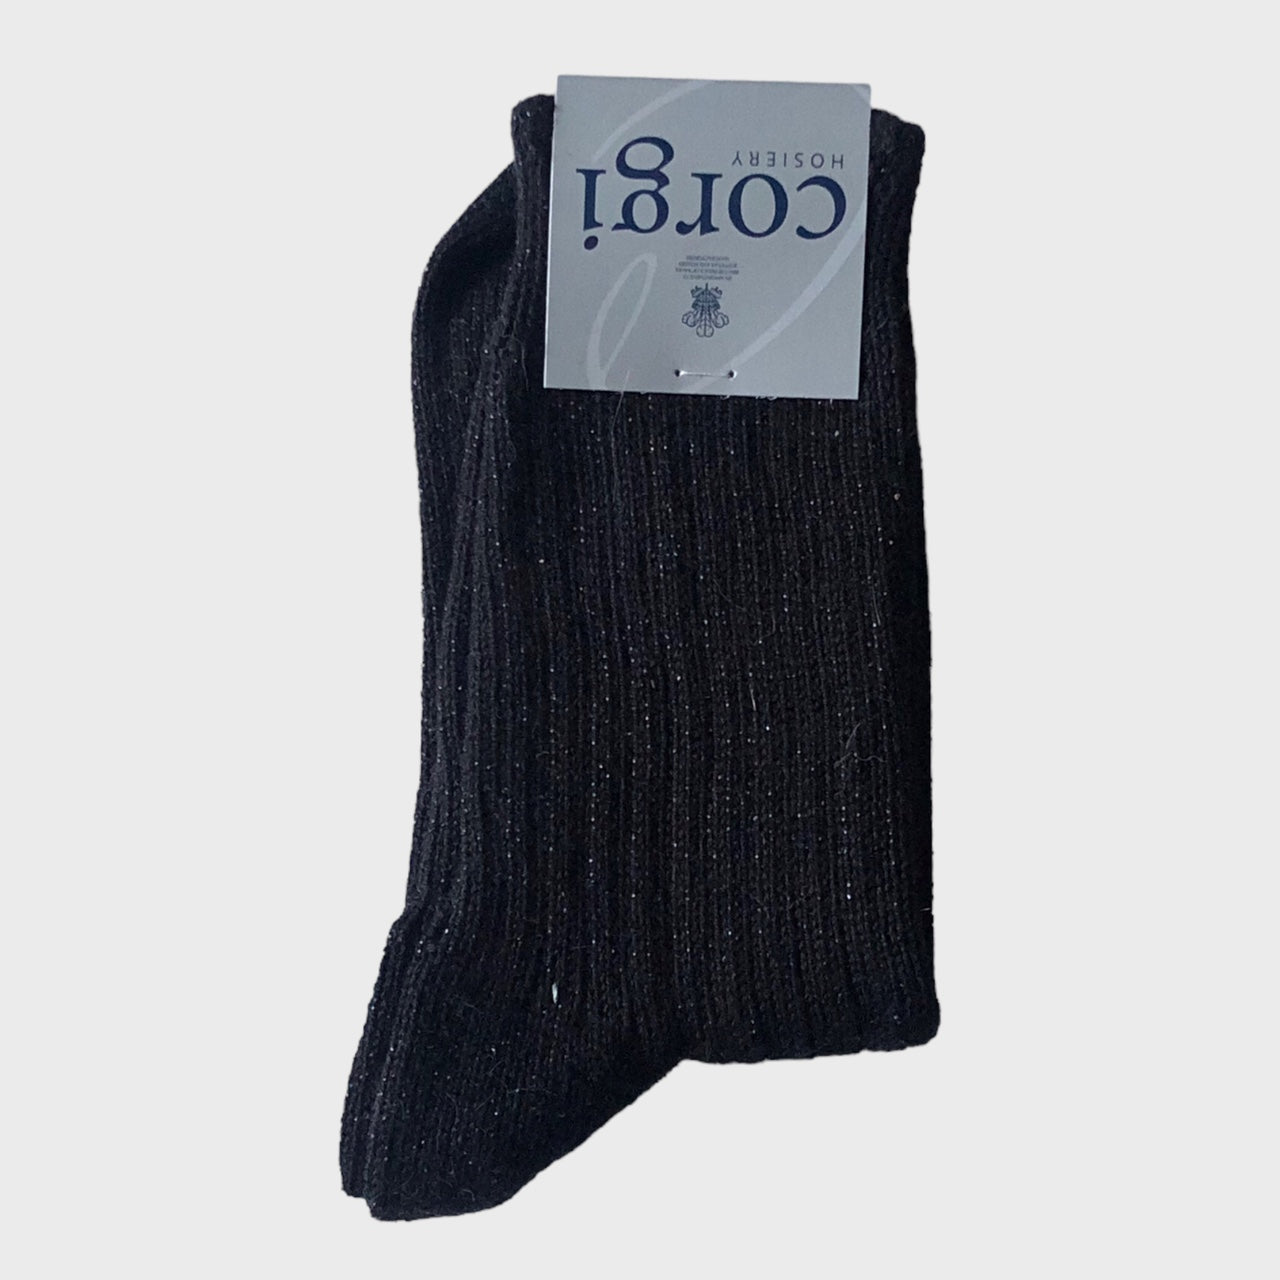 Corgi - Cotton Blend Black Socks